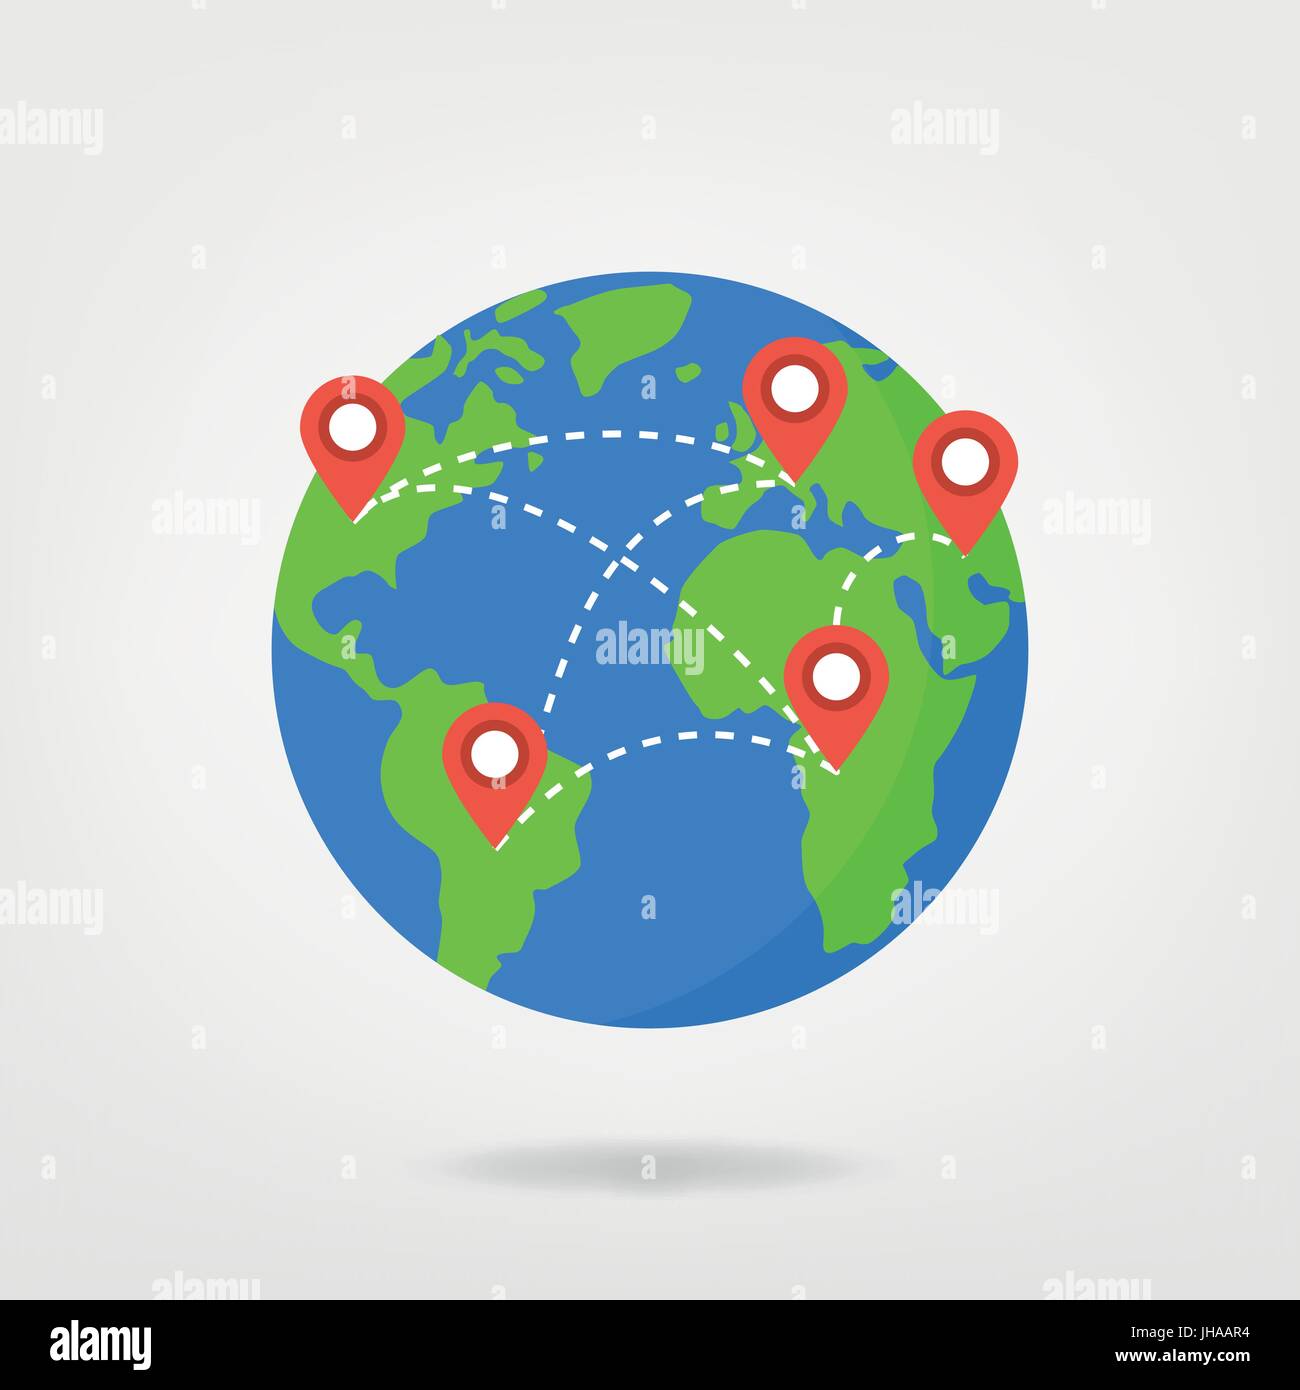 Pin-Punkte auf Welt Karte / Konzept Abbildung zu reisen. Standortmarkierung auf Globus, Vektorgrafik. Stock Vektor